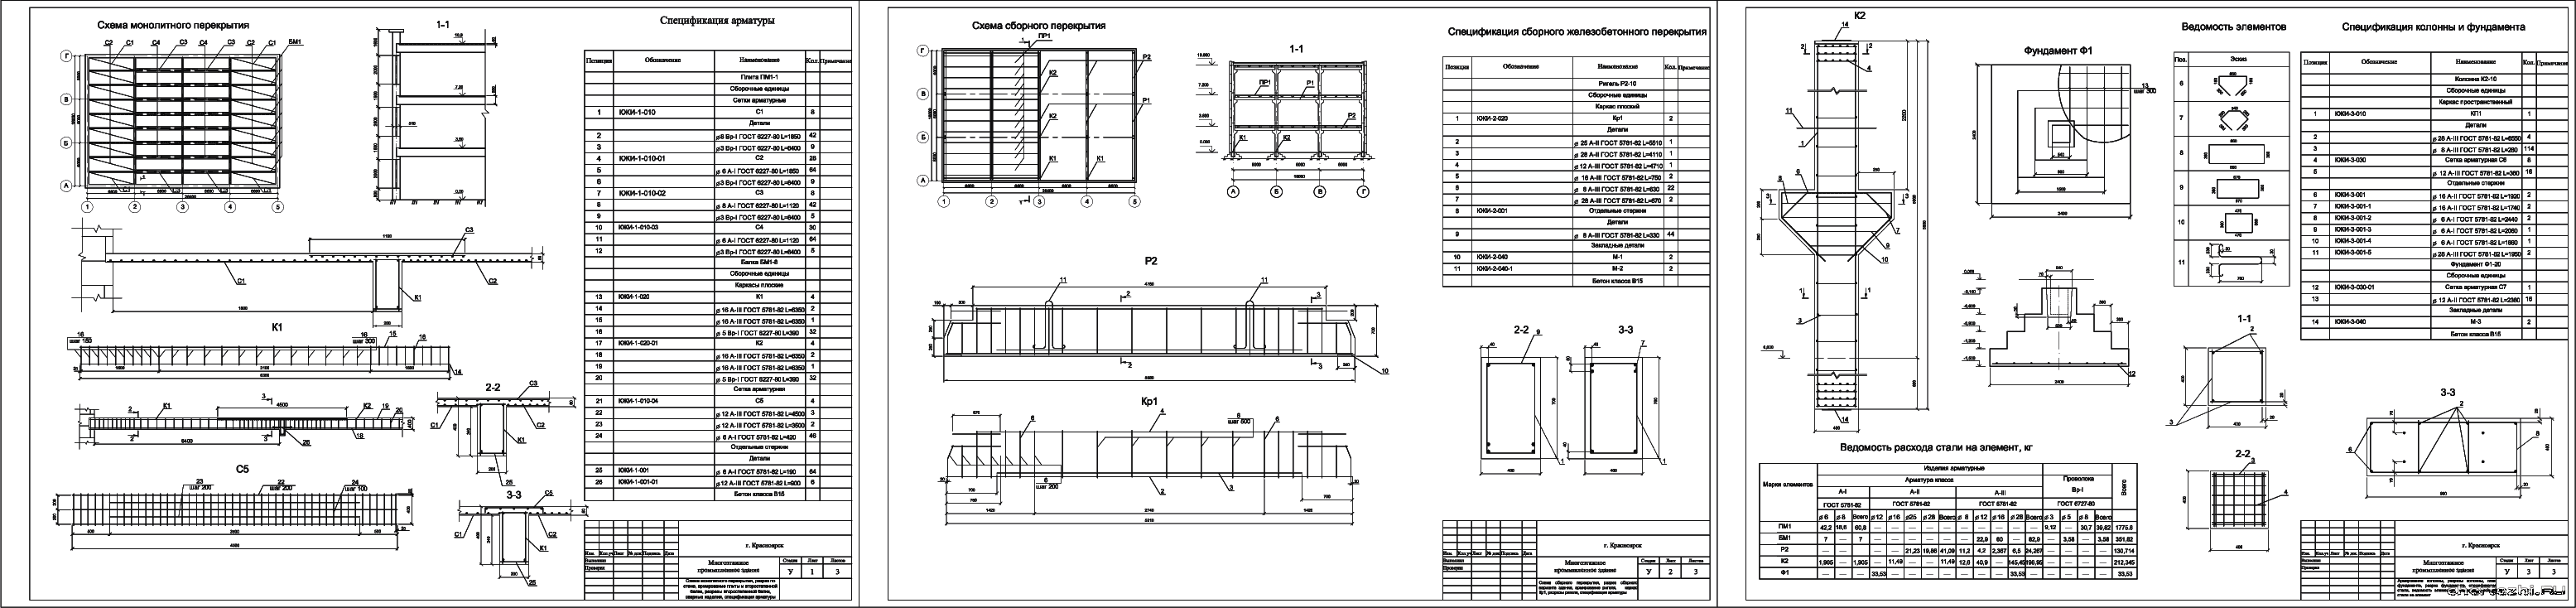 Курсовой проект - Проектирование железобетонных конструкций многоэтажного промышленного здания 26,4 х 18,0 м в г. Красноярск